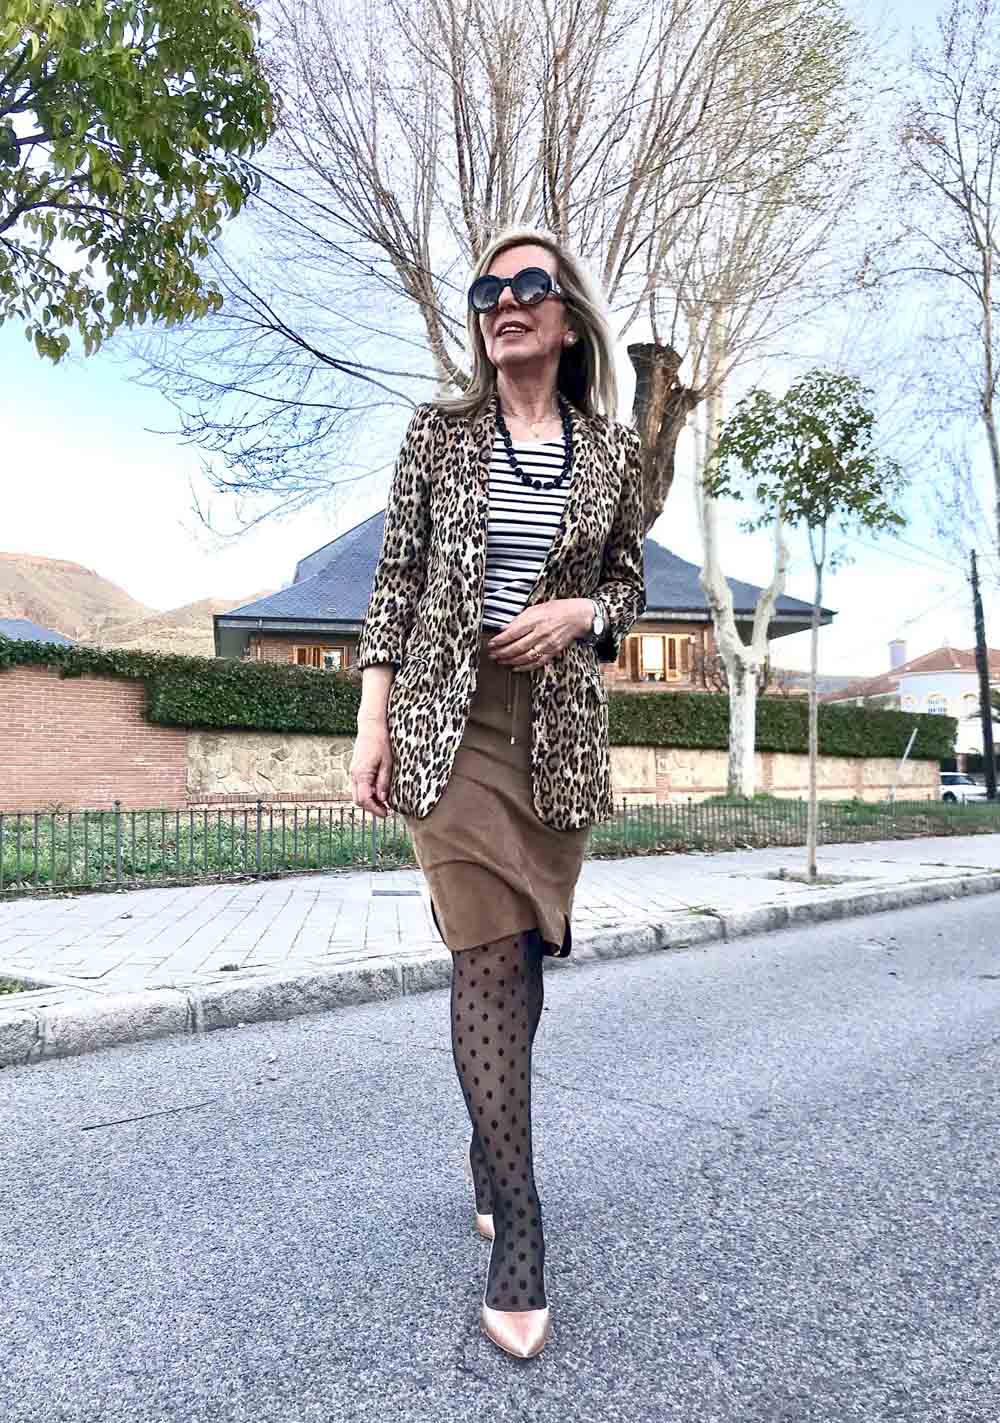 Esther Manrique. Edad: 58 años. Origen: Alcalá de Henares. Instagram: @aisder. «Look de 'mix&match', chaqueta 'animal print', camiseta de rayas, falda de ante y medias de topos».